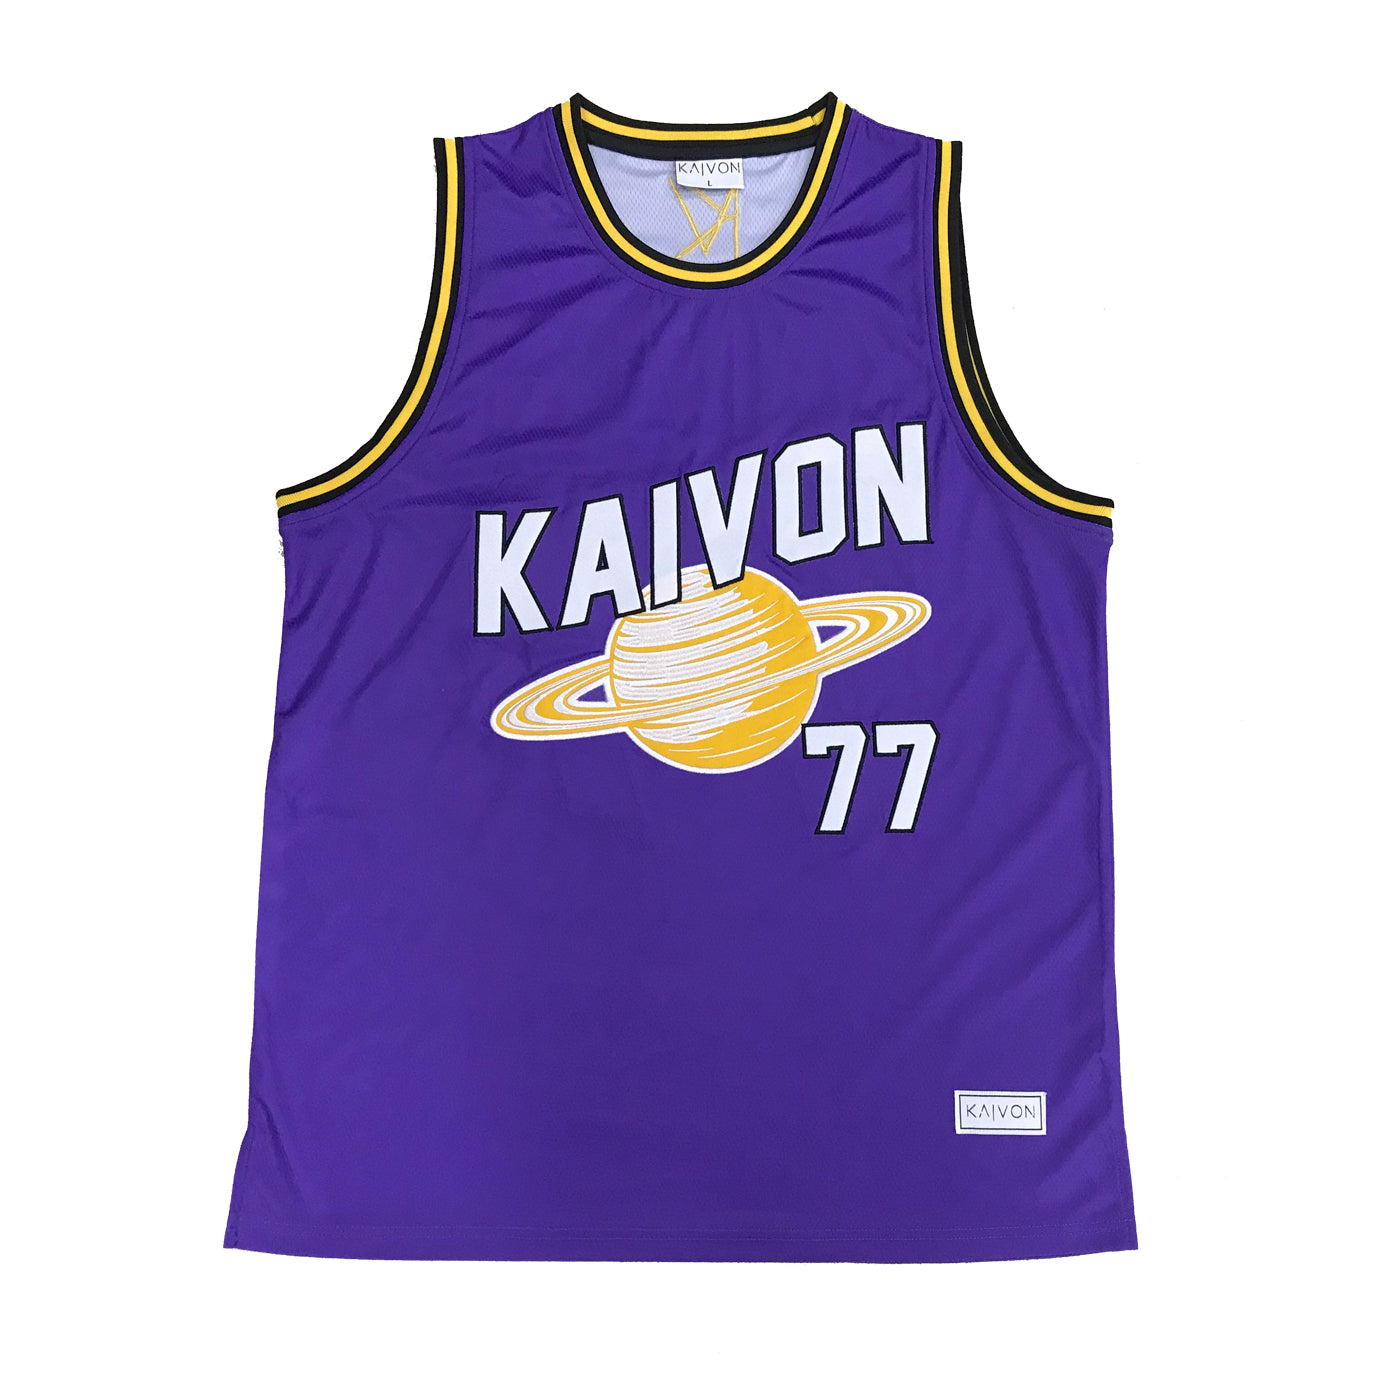 Kaivon Basketball Jersey